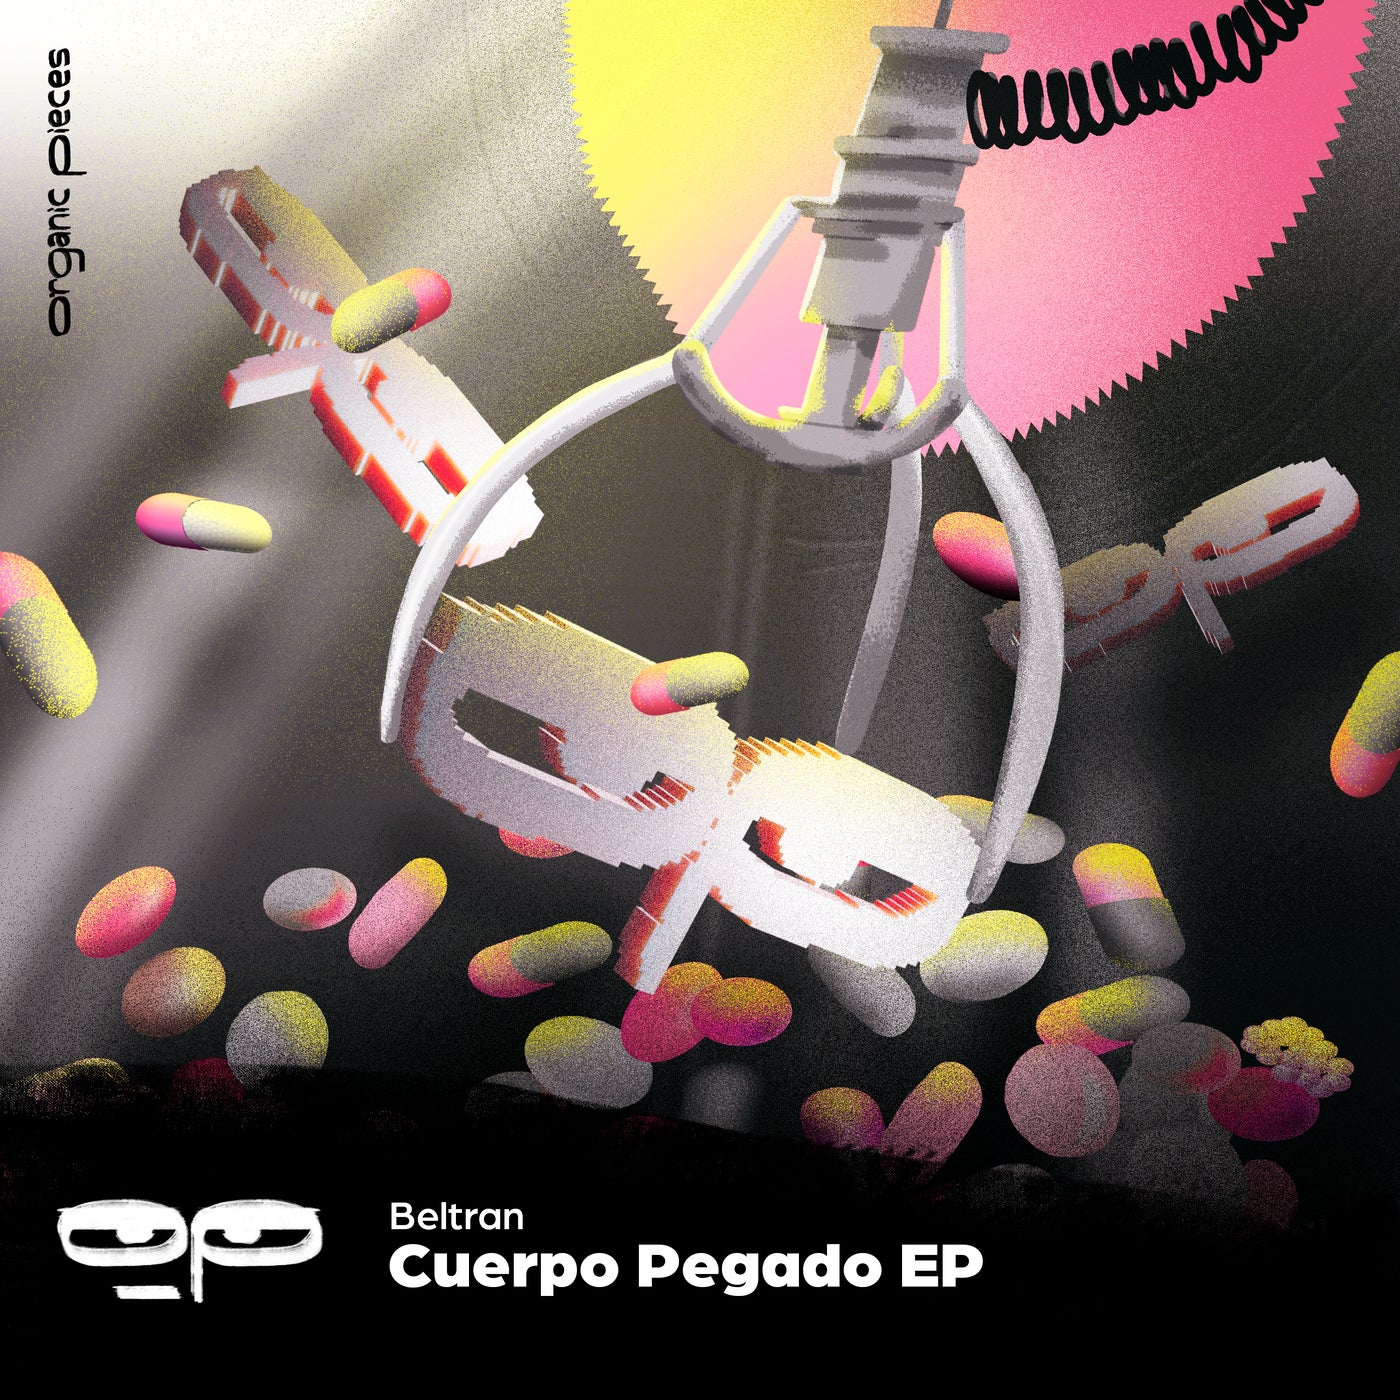 image cover: Beltran (BR) - Cuerpo Pegado EP on Organic Pieces